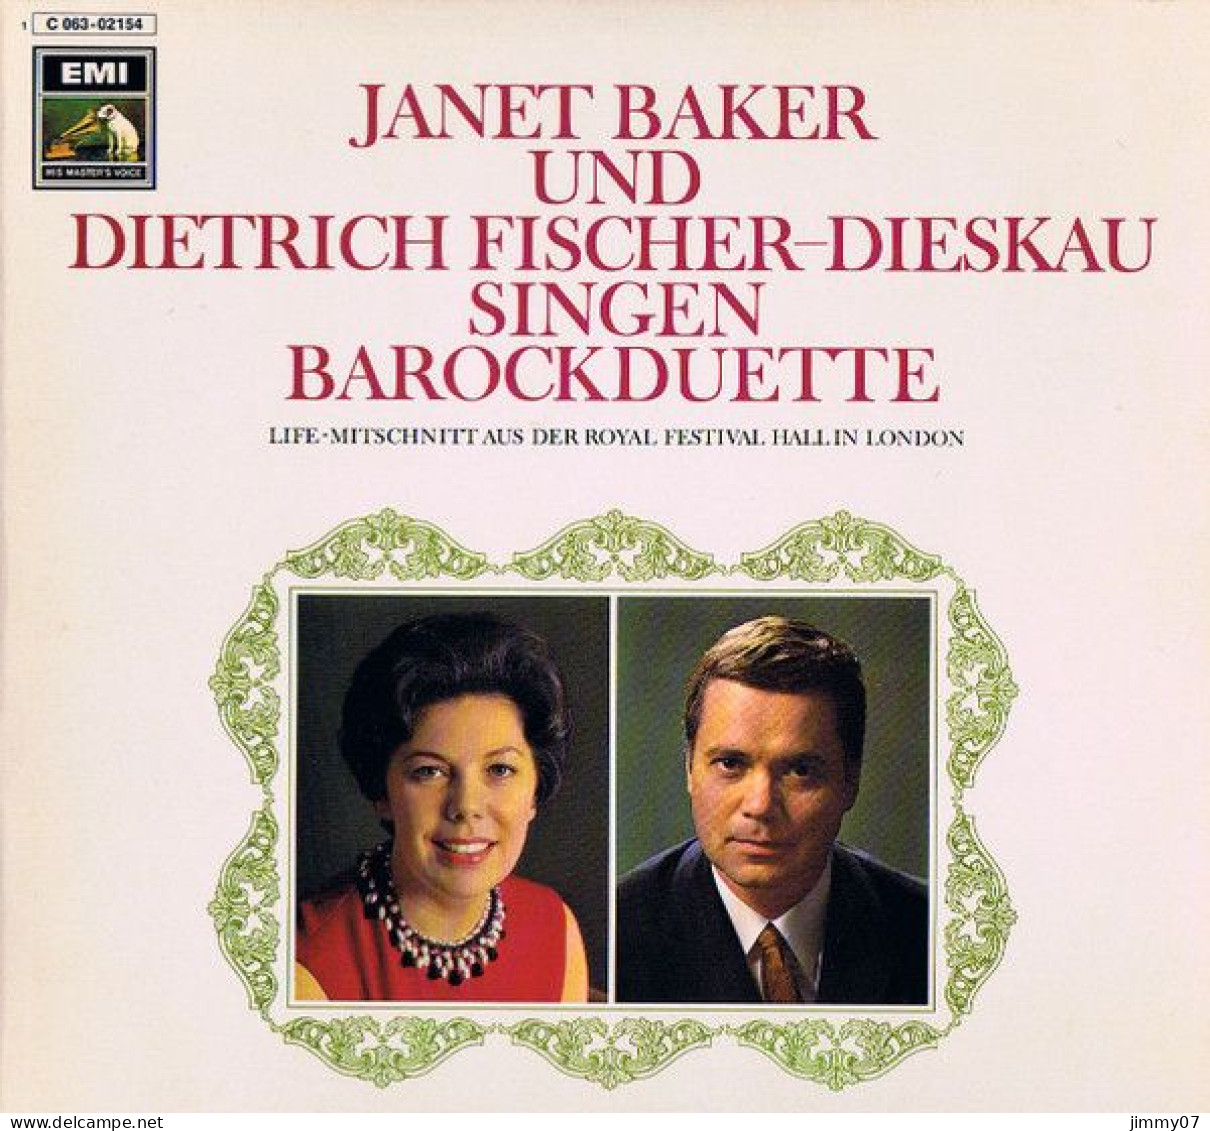 Janet Baker Und Dietrich Fischer-Dieskau - Singen Barockduette Live-Mitschnitt Aus Der Royal Festival Hall In London(LP) - Classical